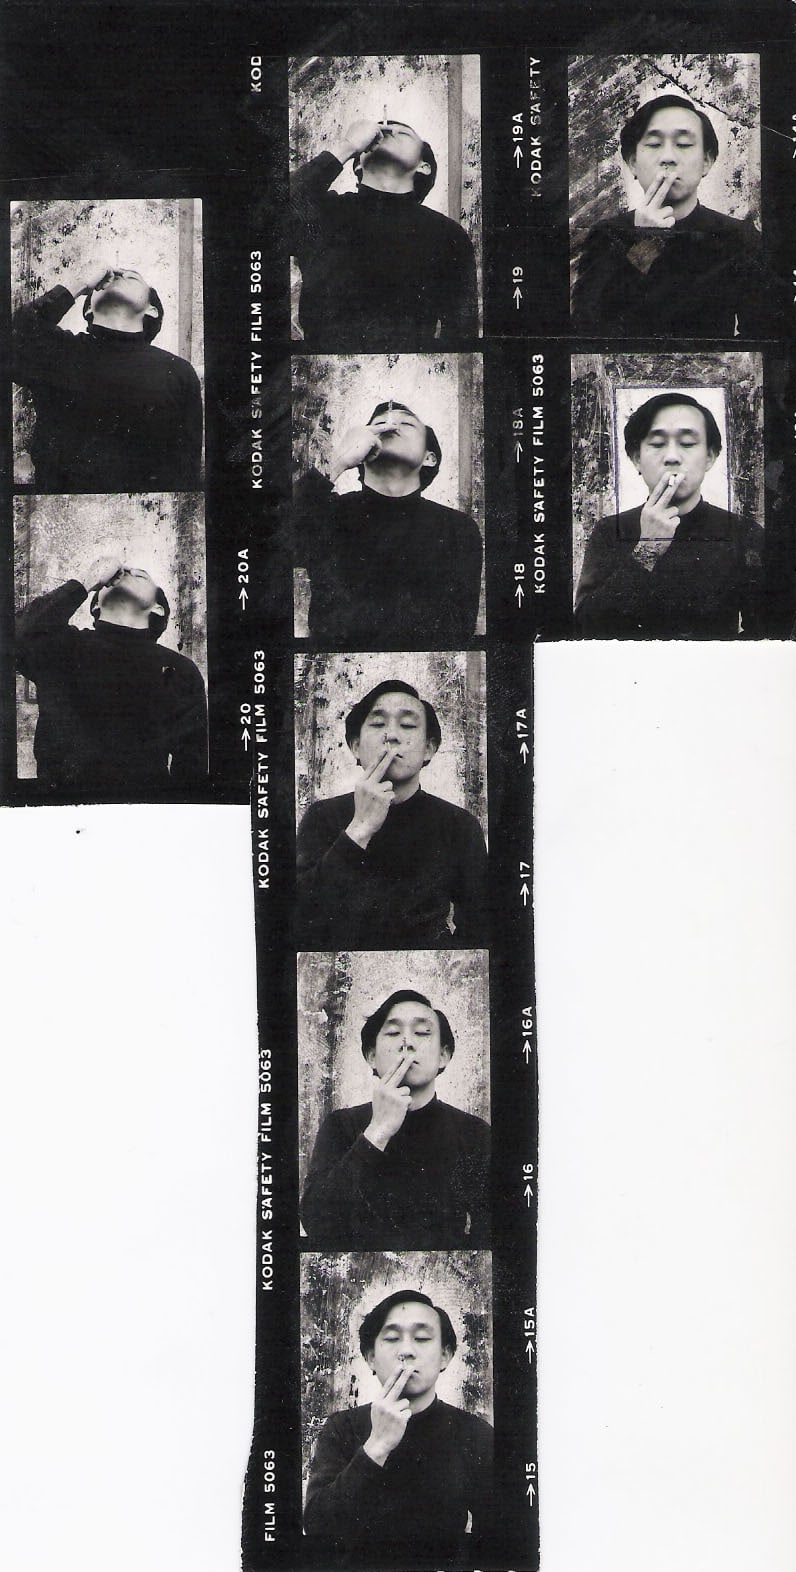 SUNG NEUNG KYUNG, Smoking - contact print, 1976